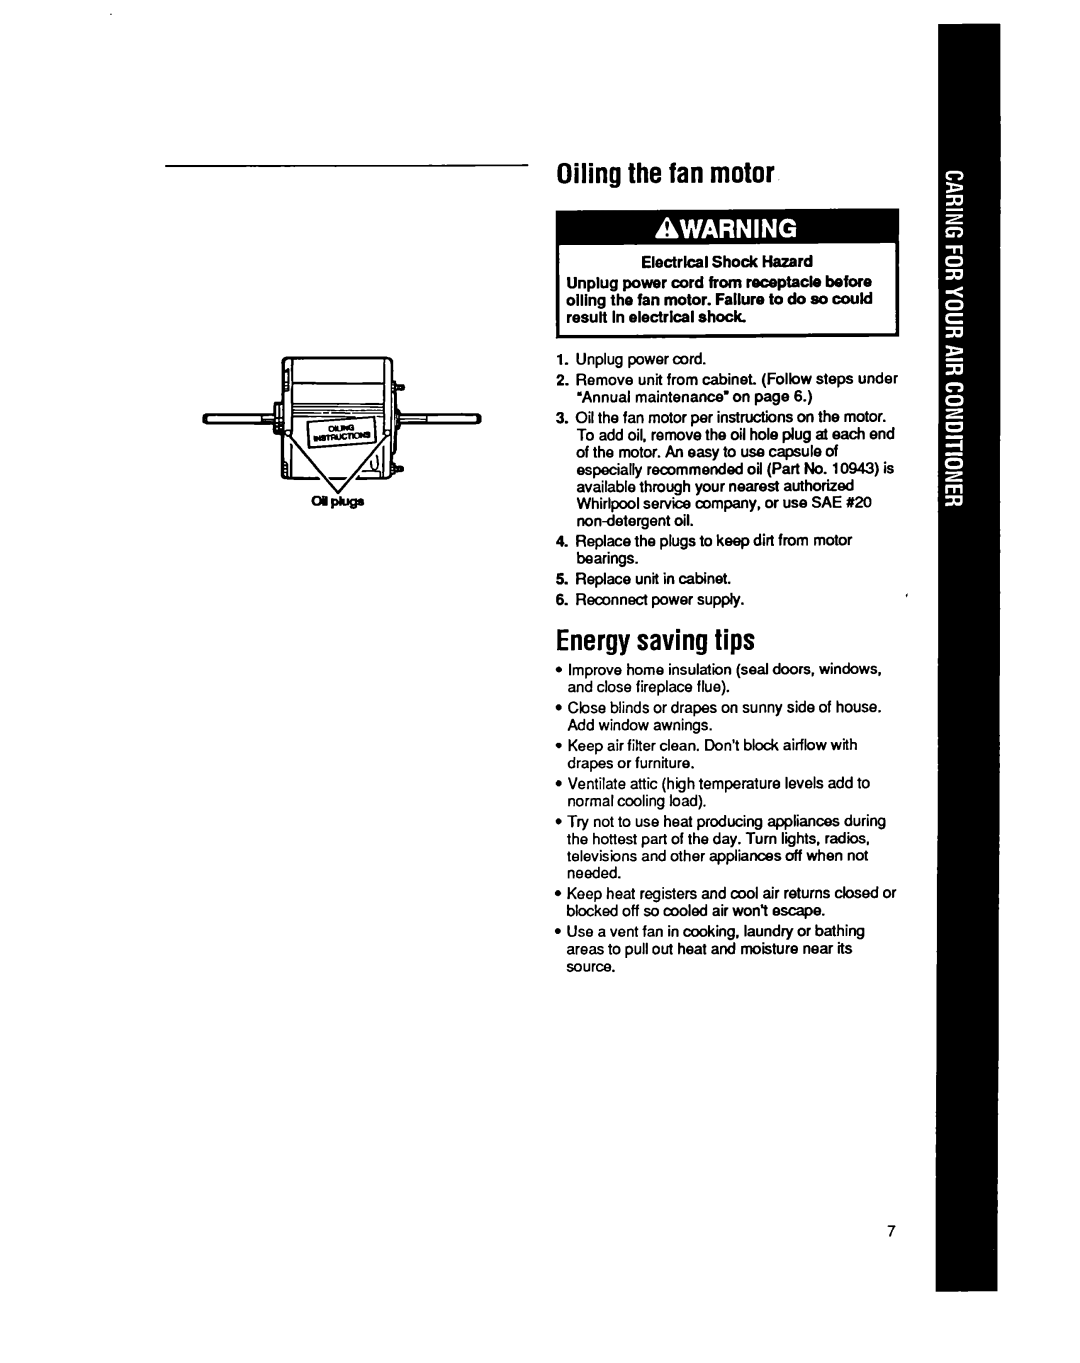 Whirlpool BHAC1400XS0 manual Oilingthe fan motor, Energysavingtips 